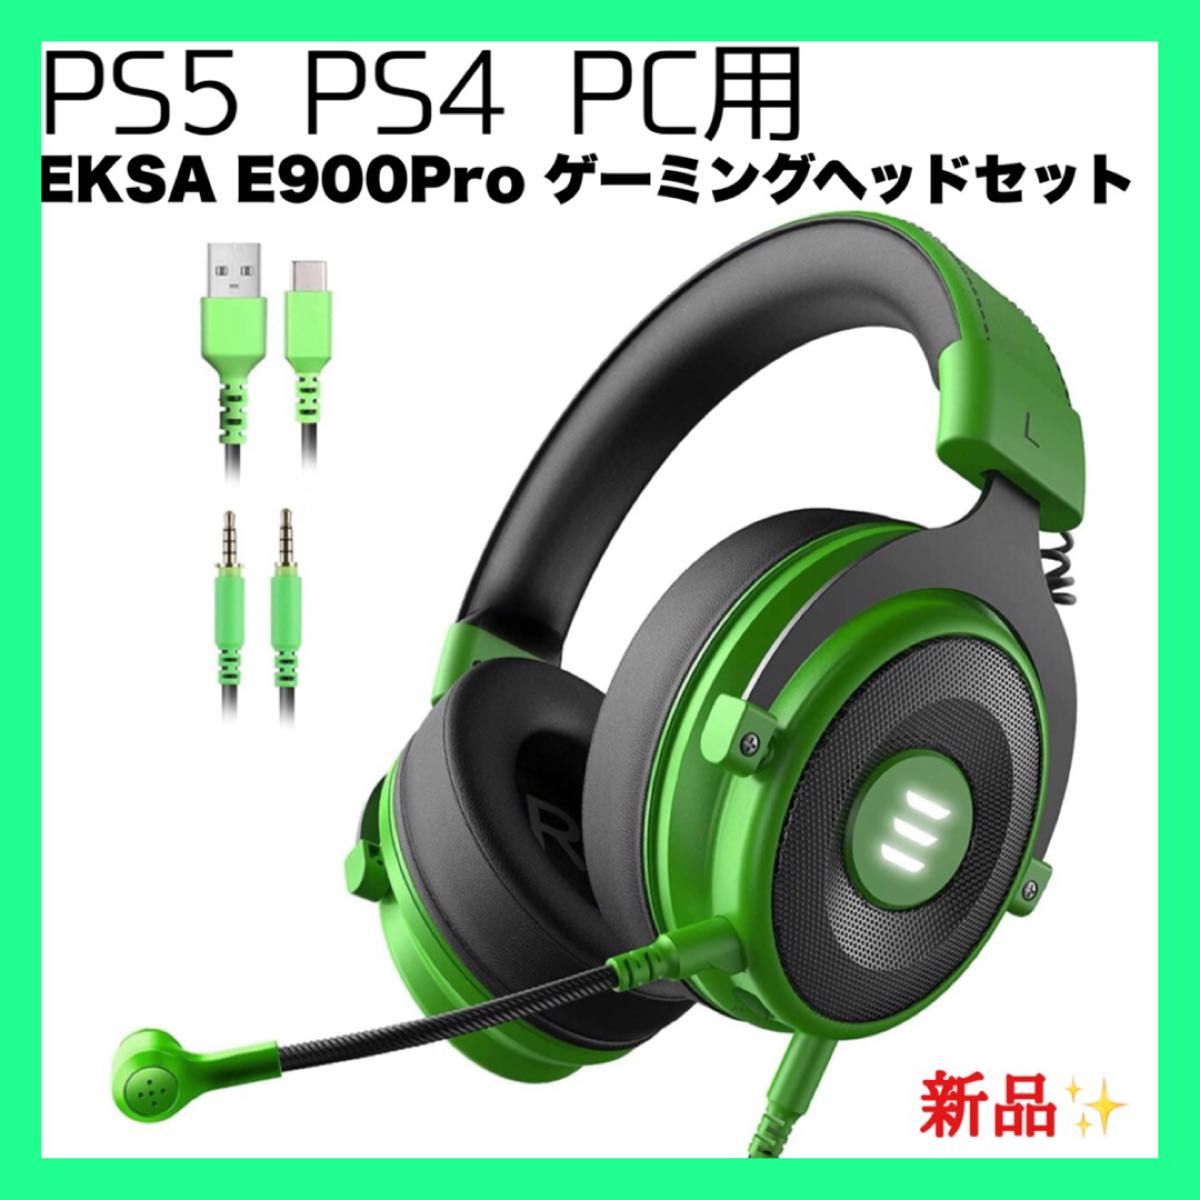 EKSA E900Pro ゲーミングヘッドセット PS4 PS5 PC用ゲーミングヘッドホン 50mmドライバー 着脱式